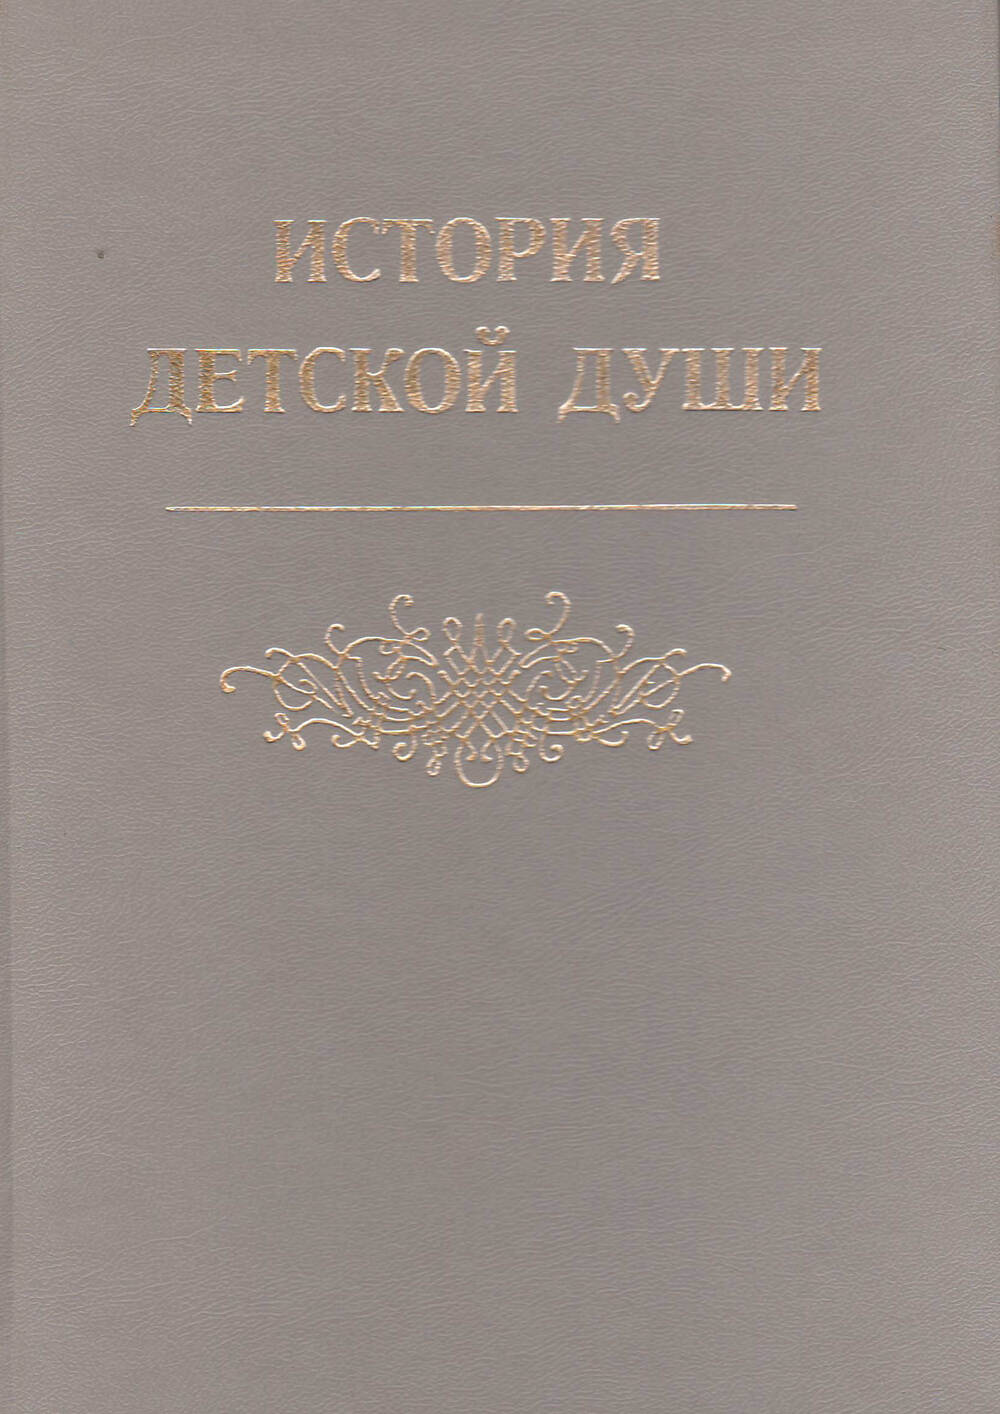 Книга История детской души составлена в 1899 г. (переиздана в 1999 году).